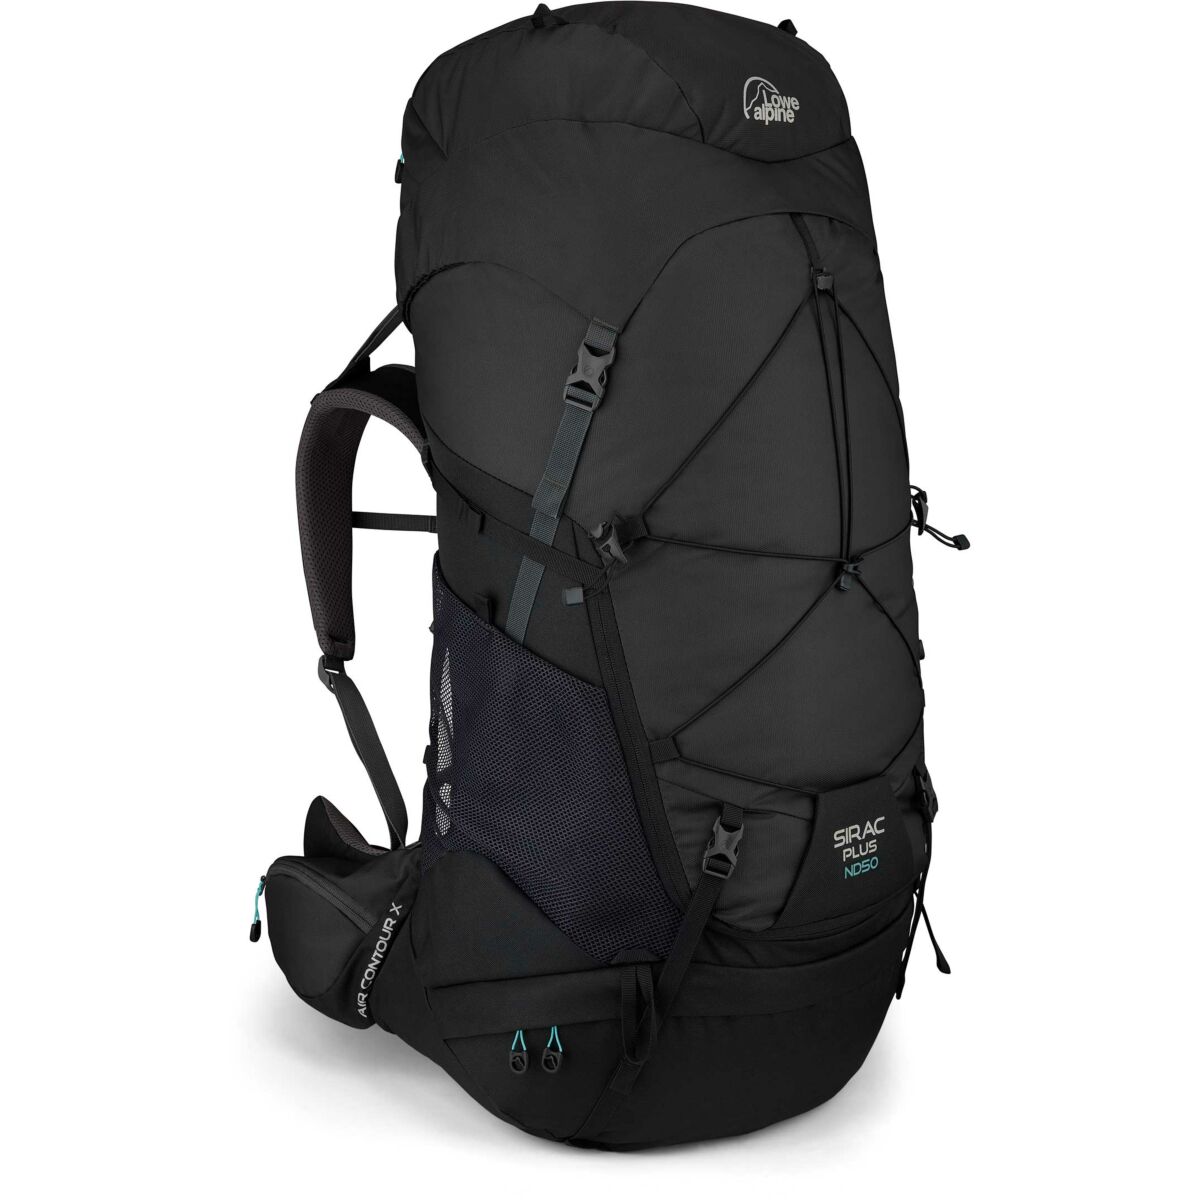 Lowe Alpine Sirac Plus ND 50 Backpack